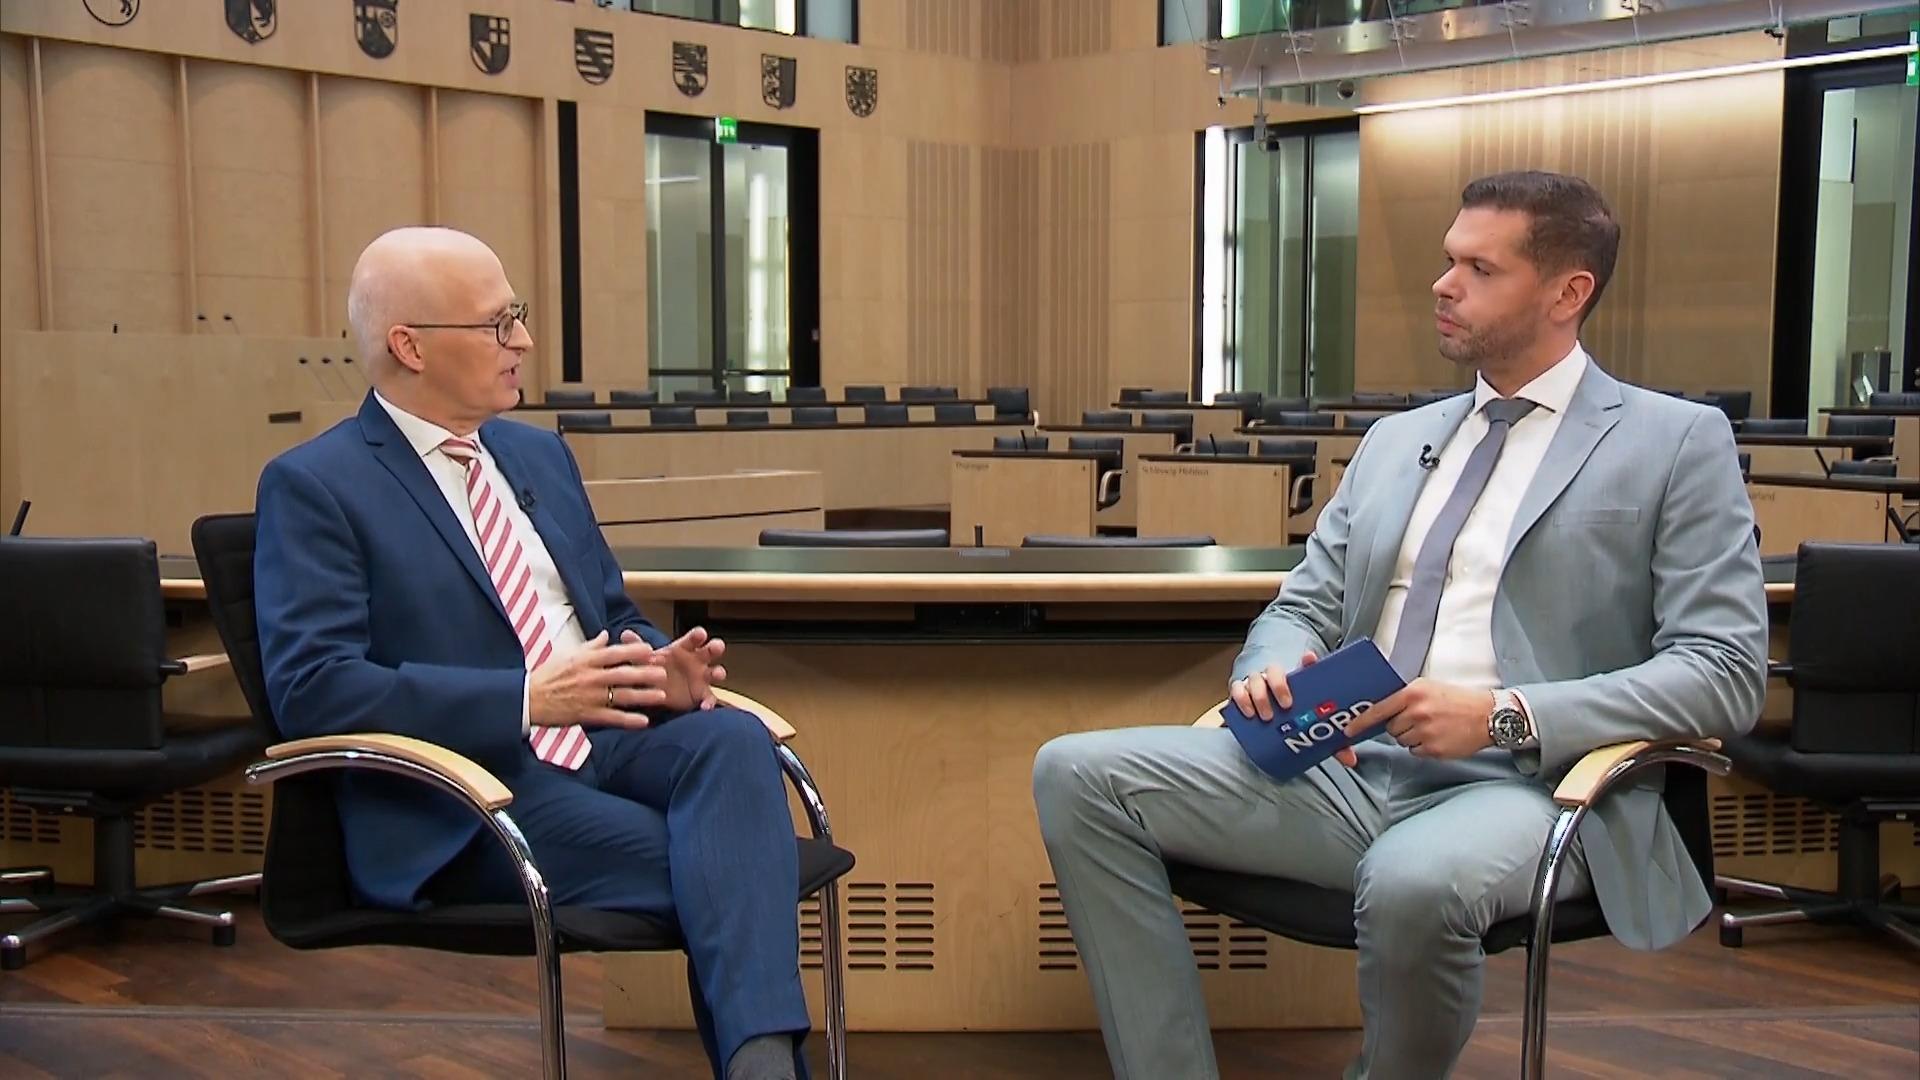 Peter Tschentscher (SPD) v rozhovoru s RTL Nord, prvním starostou Hamburku